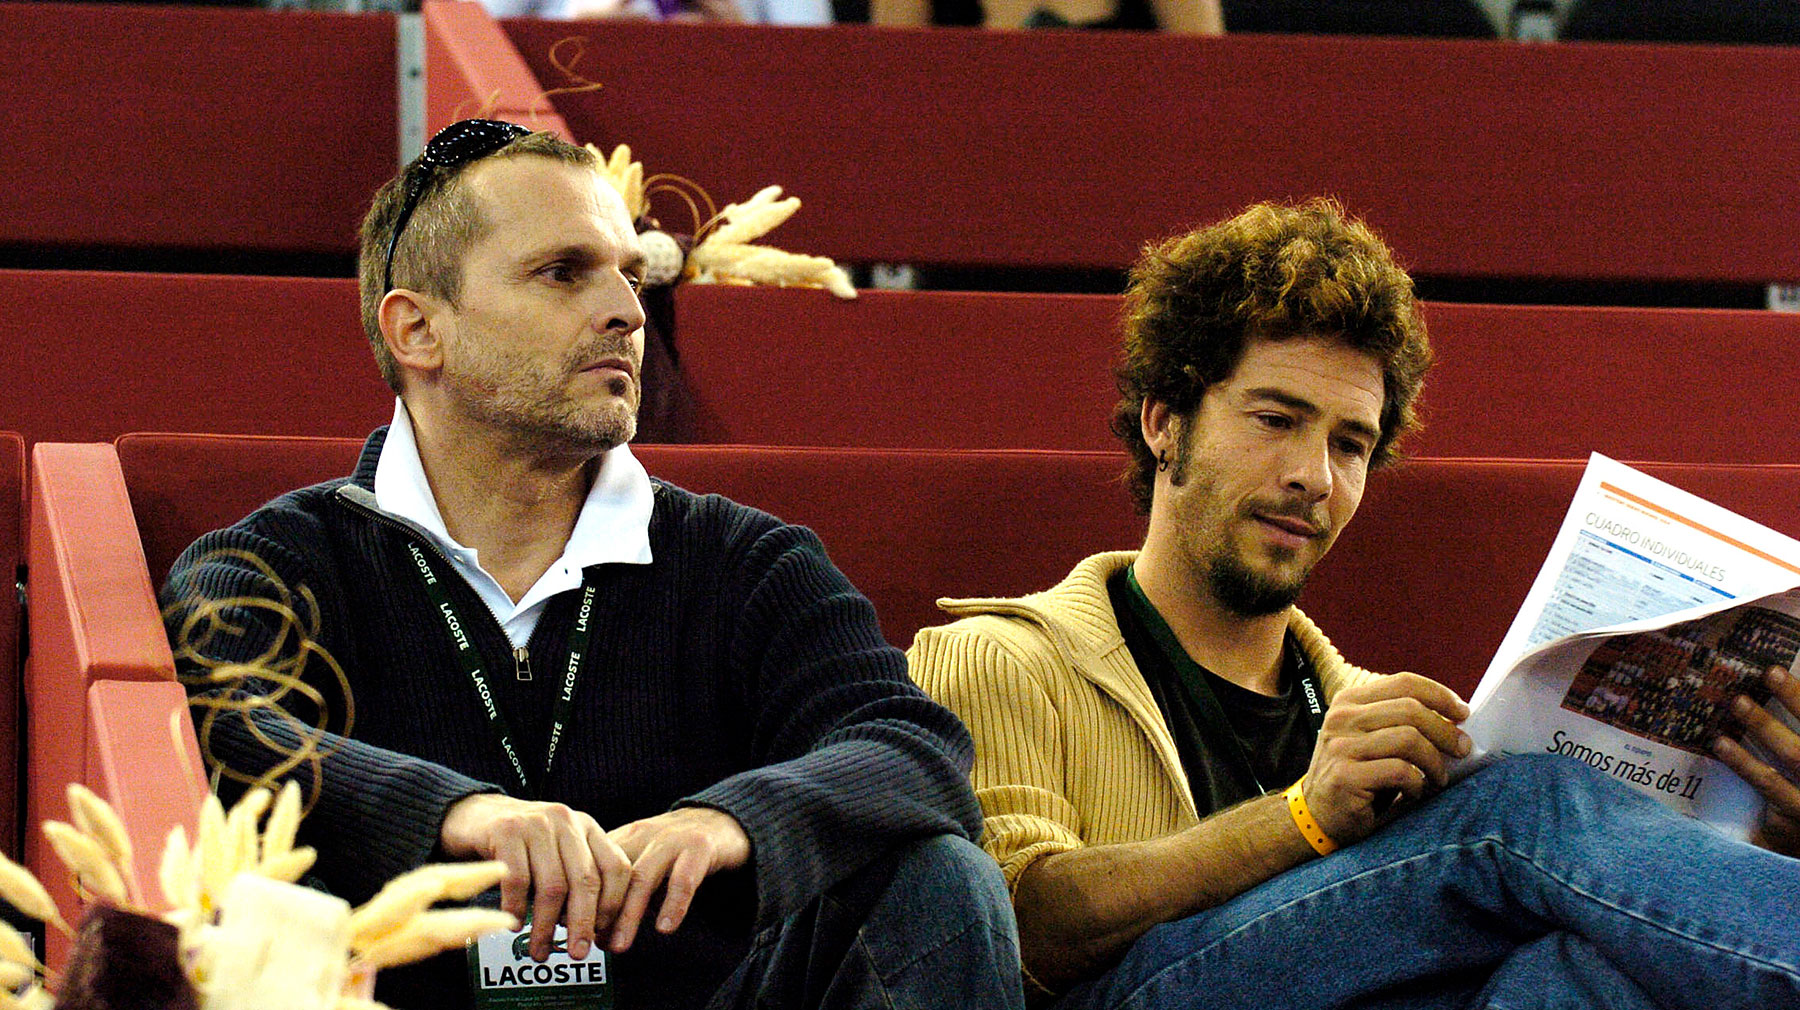 Miguel Bosé y Nacho Palau, en el tenis. / Gtres